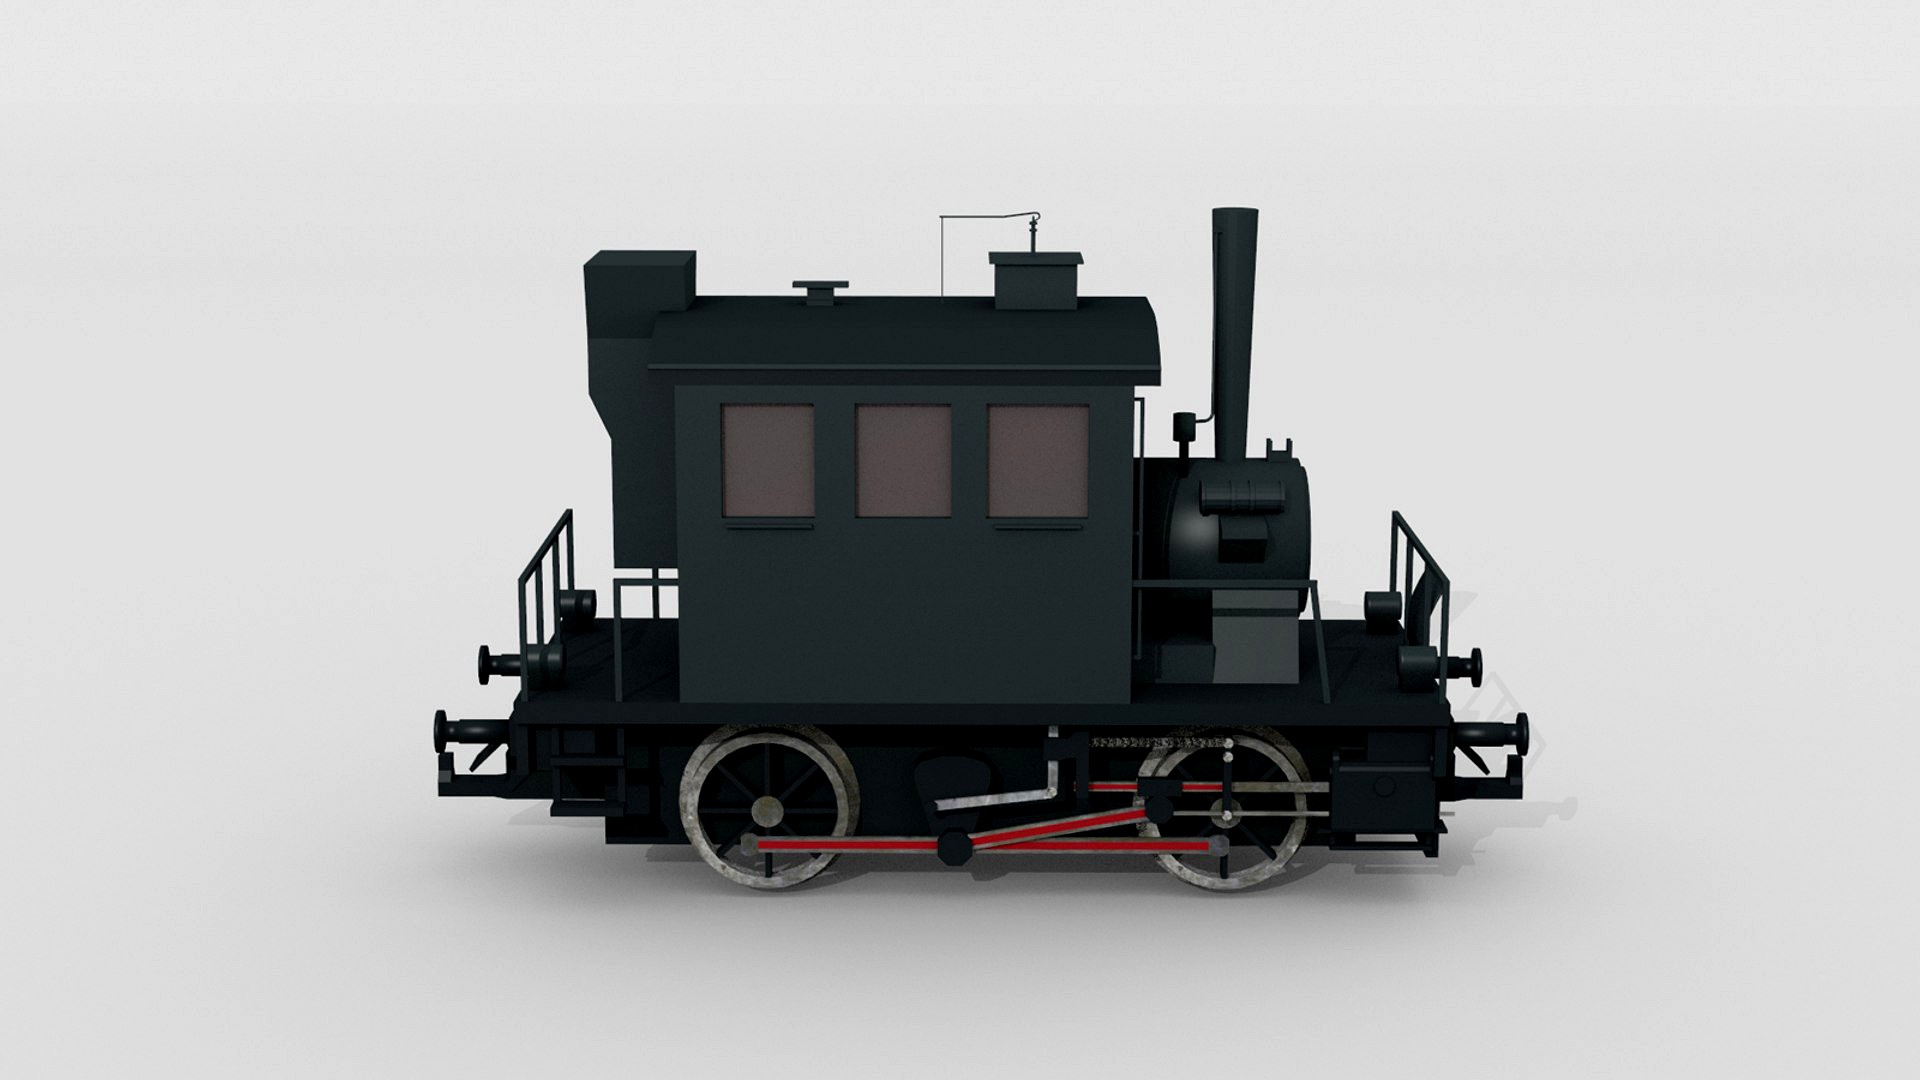 Austrian steam locomotive